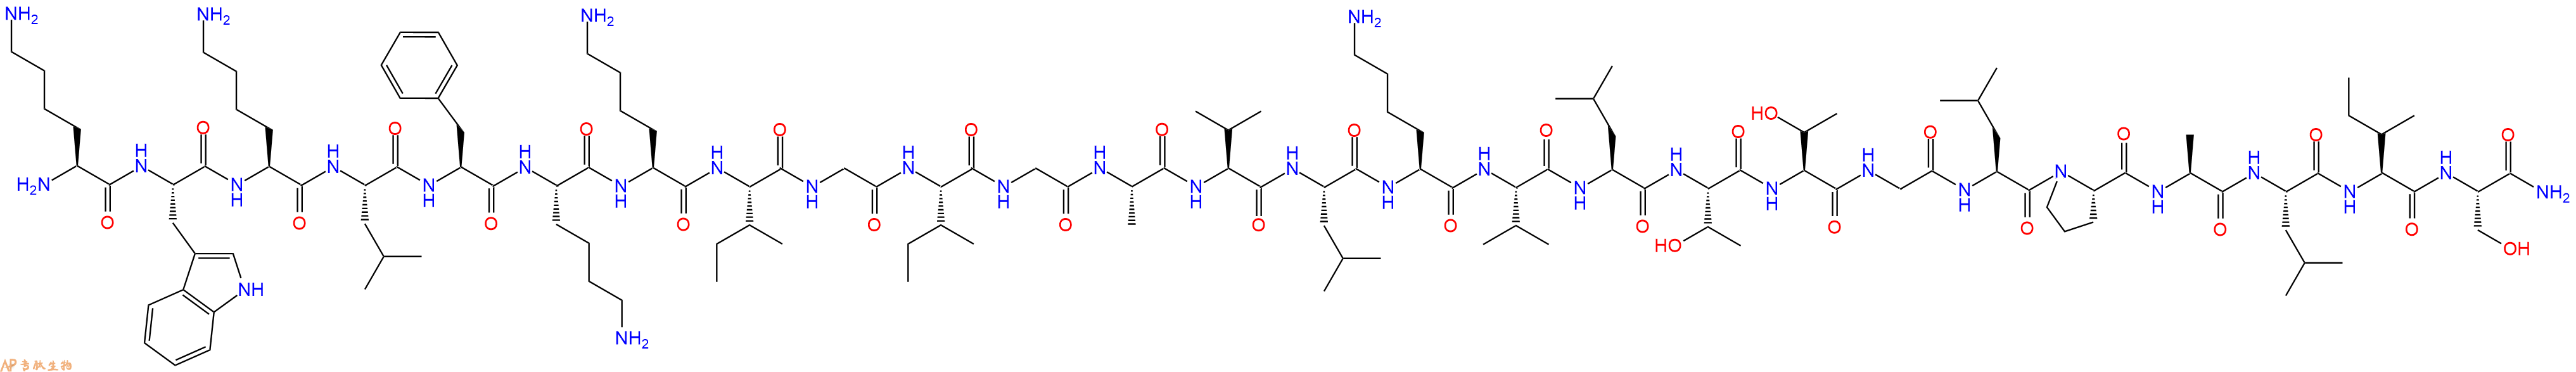 专肽生物产品CecropinA(1-8)-甲酯化littin(1-18)amide，蜂毒素(1-18)129696-23-7